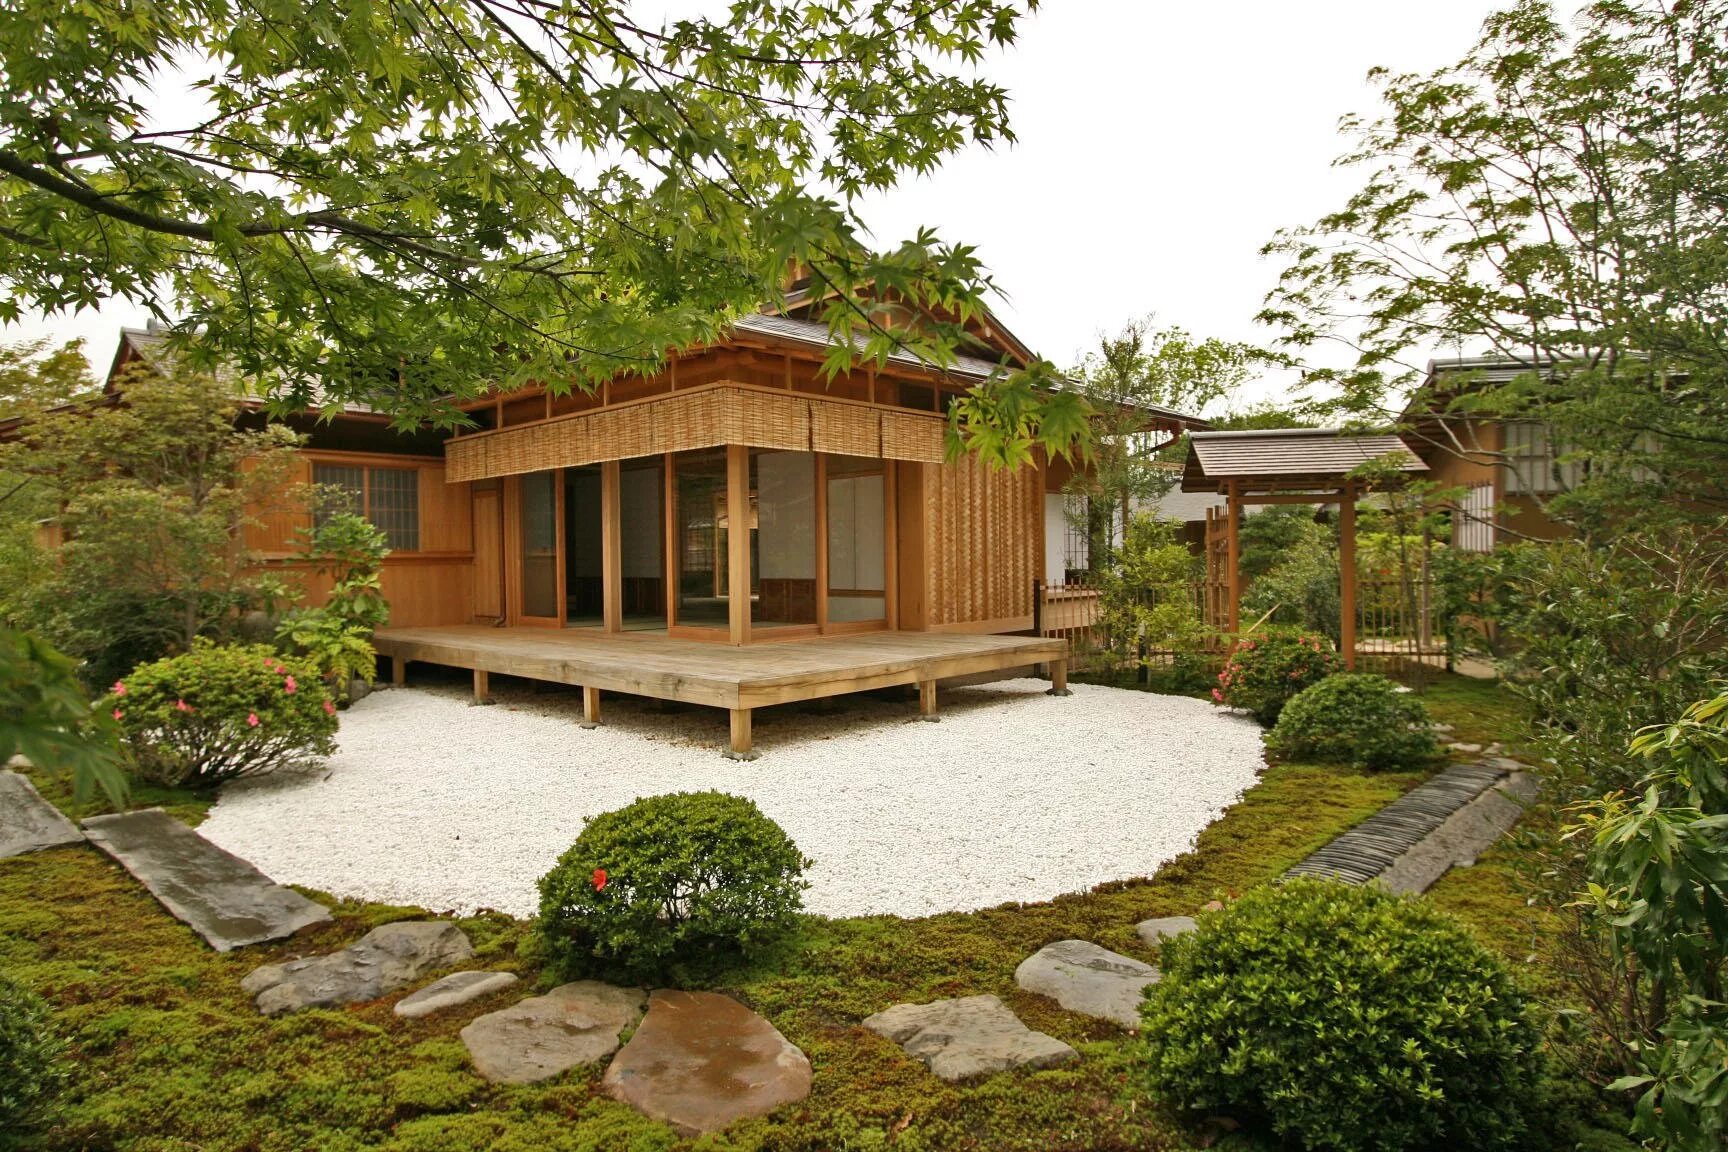 Домик маленький 6 соток. Гарден Хаус садовые домики. Коичи Курису ландшафтный дизайнер. Красивый дом с участком. Дачный домик в японском стиле.